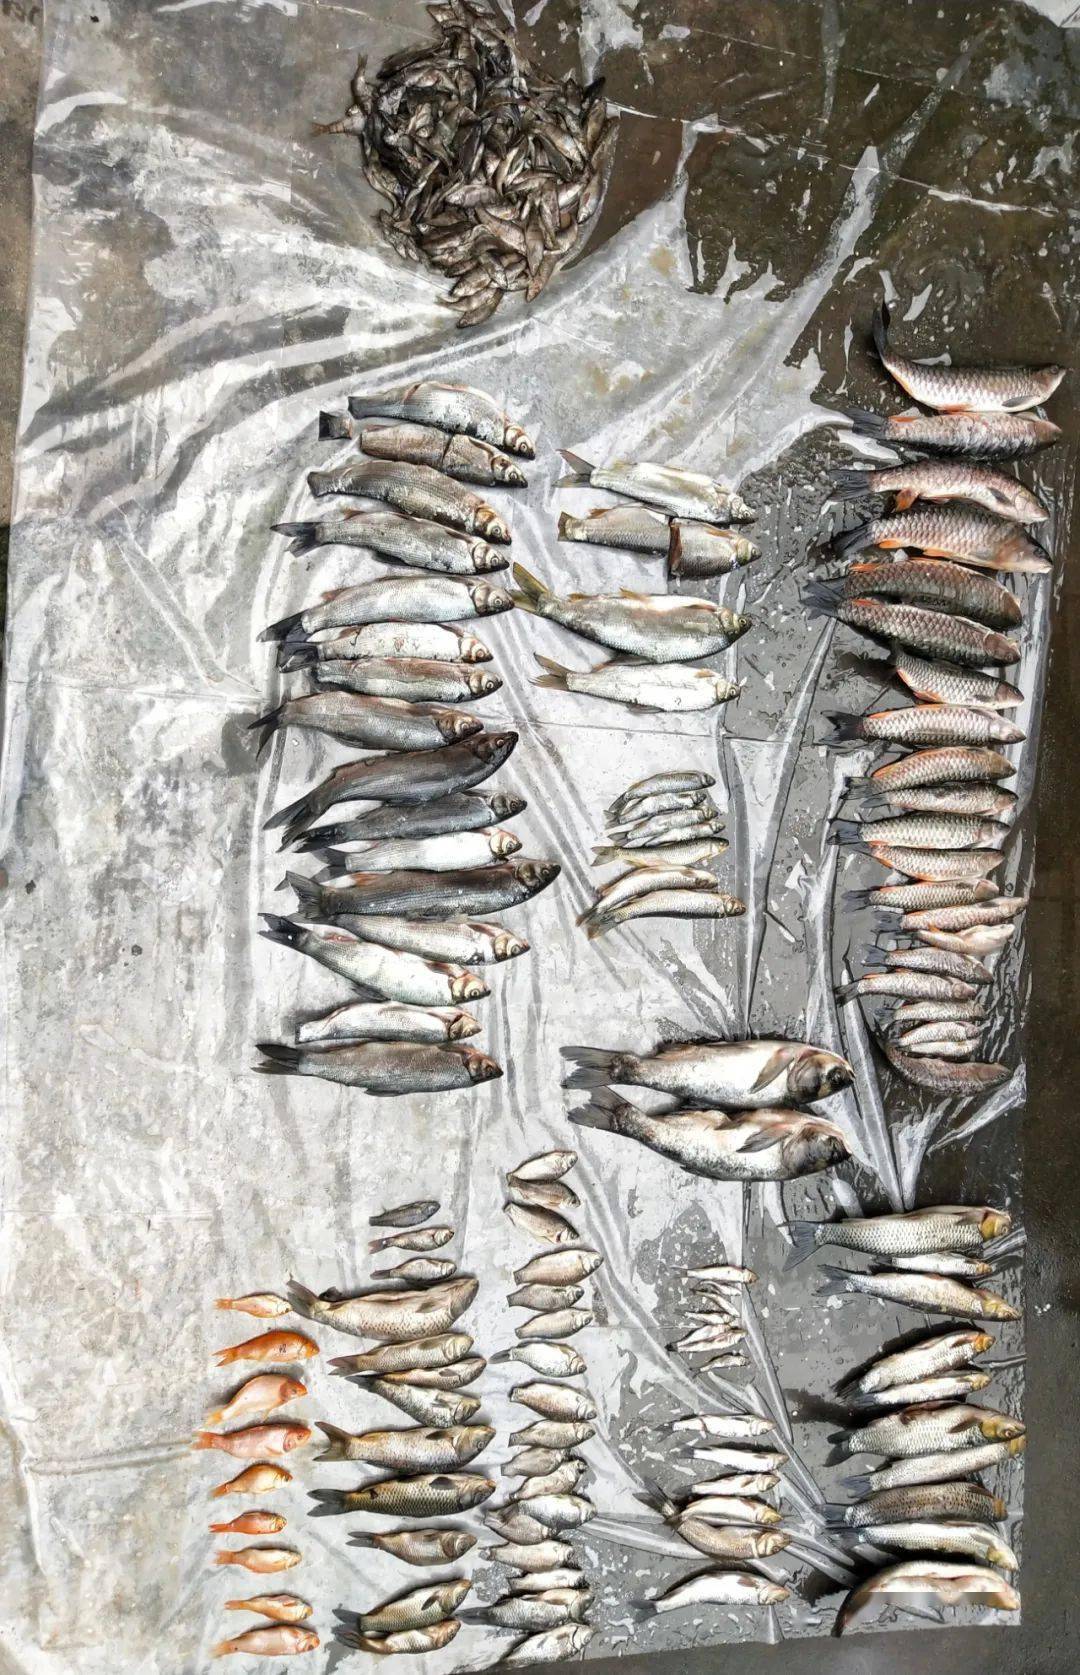 庆元东部山区的野生溪鱼几乎绝迹,都是他们干的!